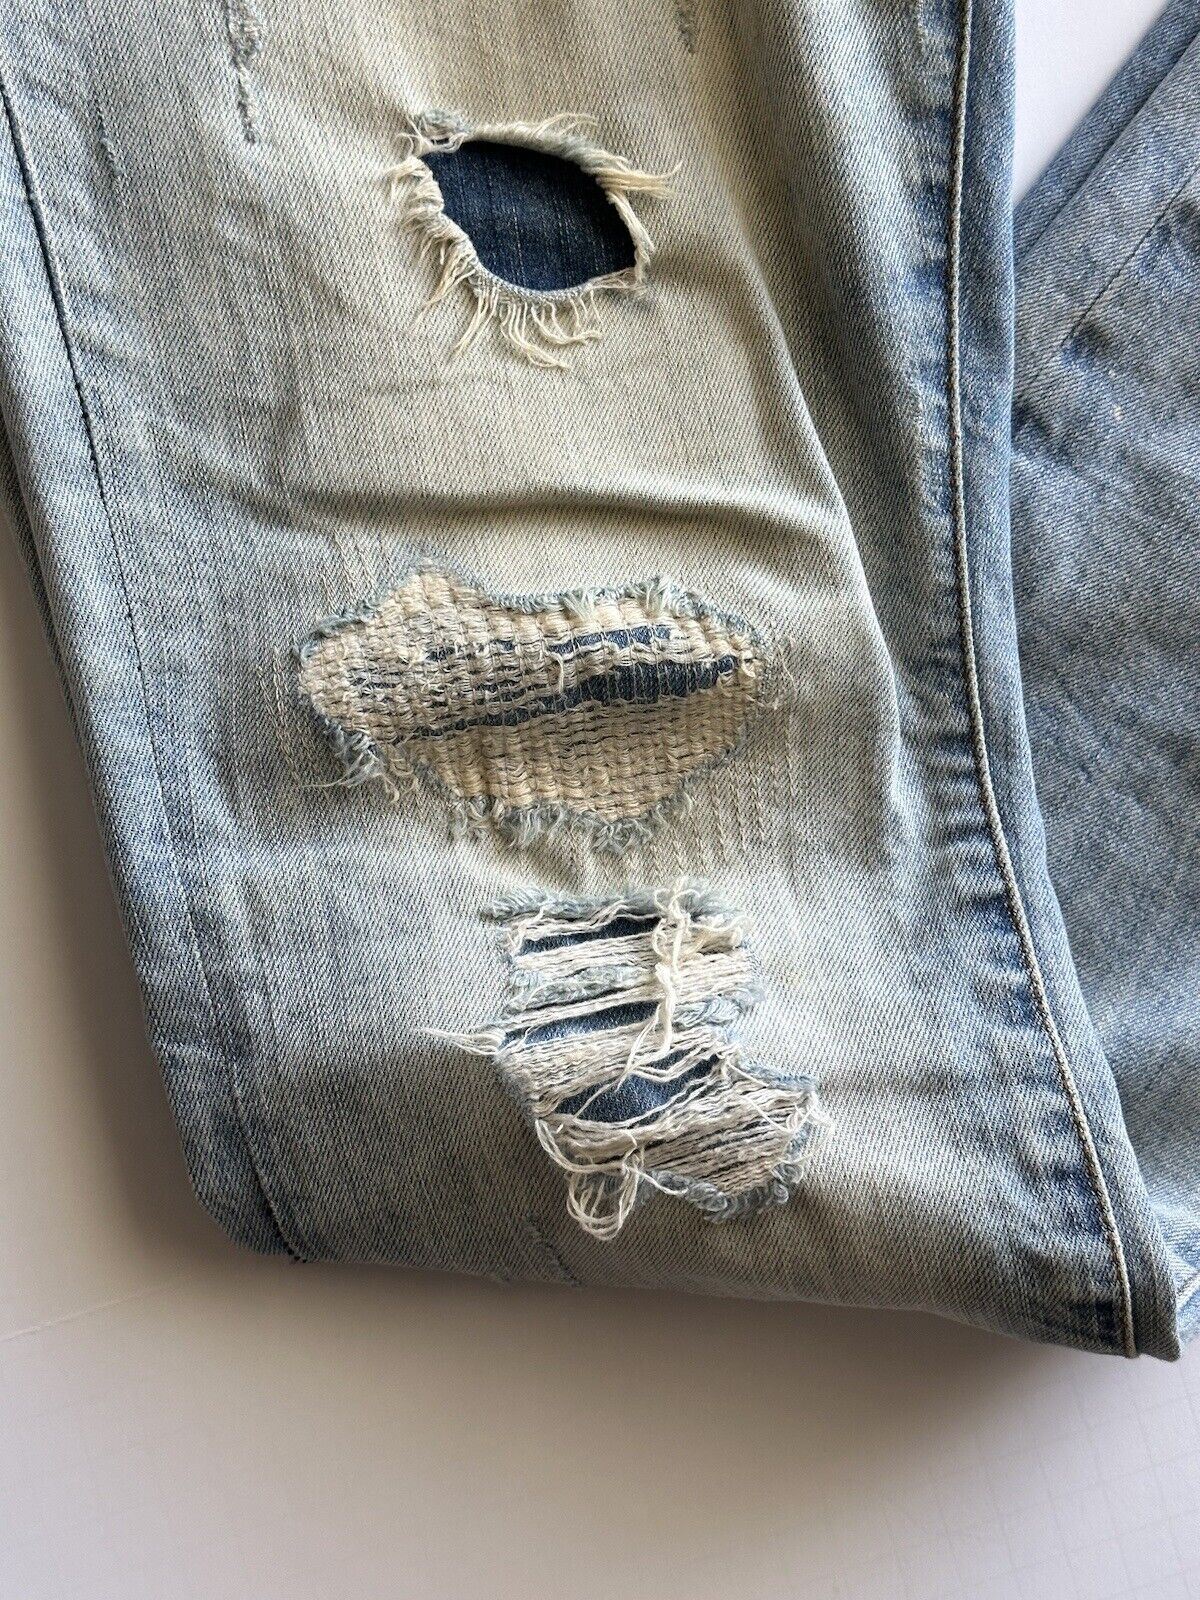 Мужские голубые джинсы из современного денима ZARA, размер 32 (США) (при измерении 34 дюйма)